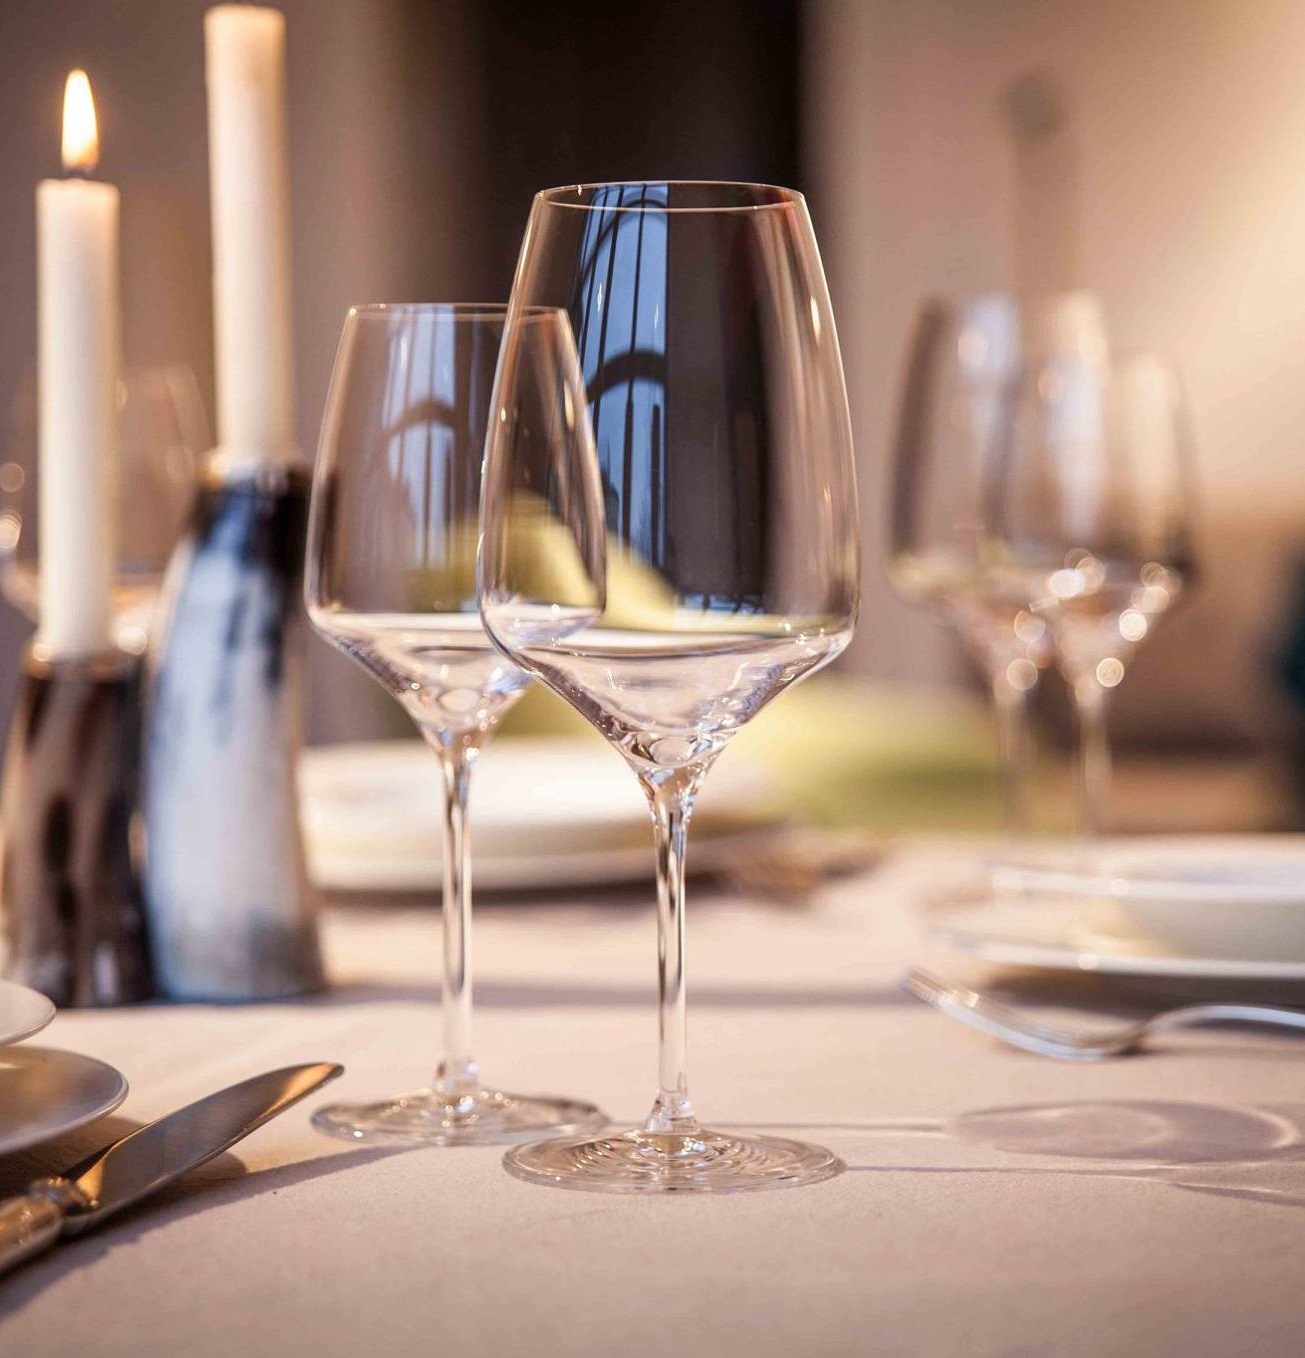 Ly Vang Trắng Cao Cấp - Pha lê nguyên khối tinh xảo - Lý tưởng để uống vang Pinot Grigio, Chardonnay, v.v - Stolzle Exquisit White Glass